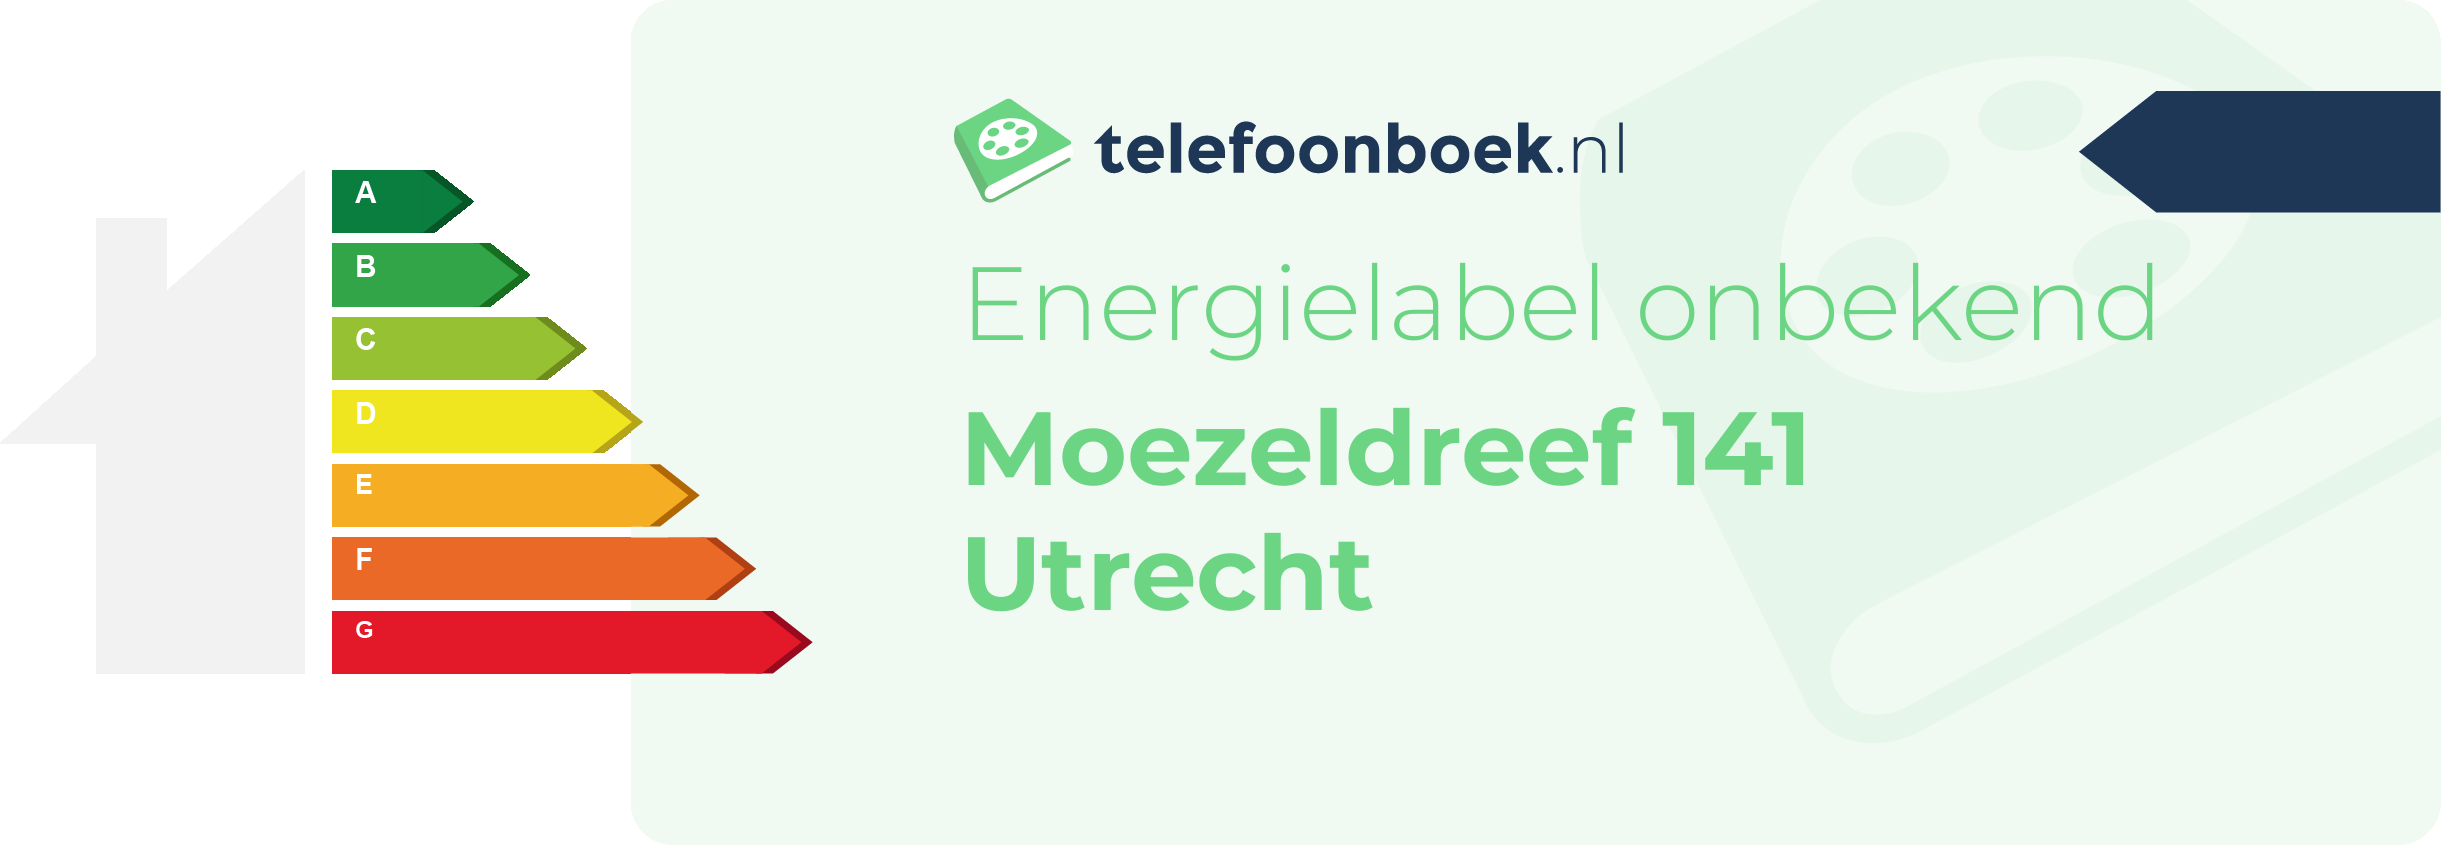 Energielabel Moezeldreef 141 Utrecht